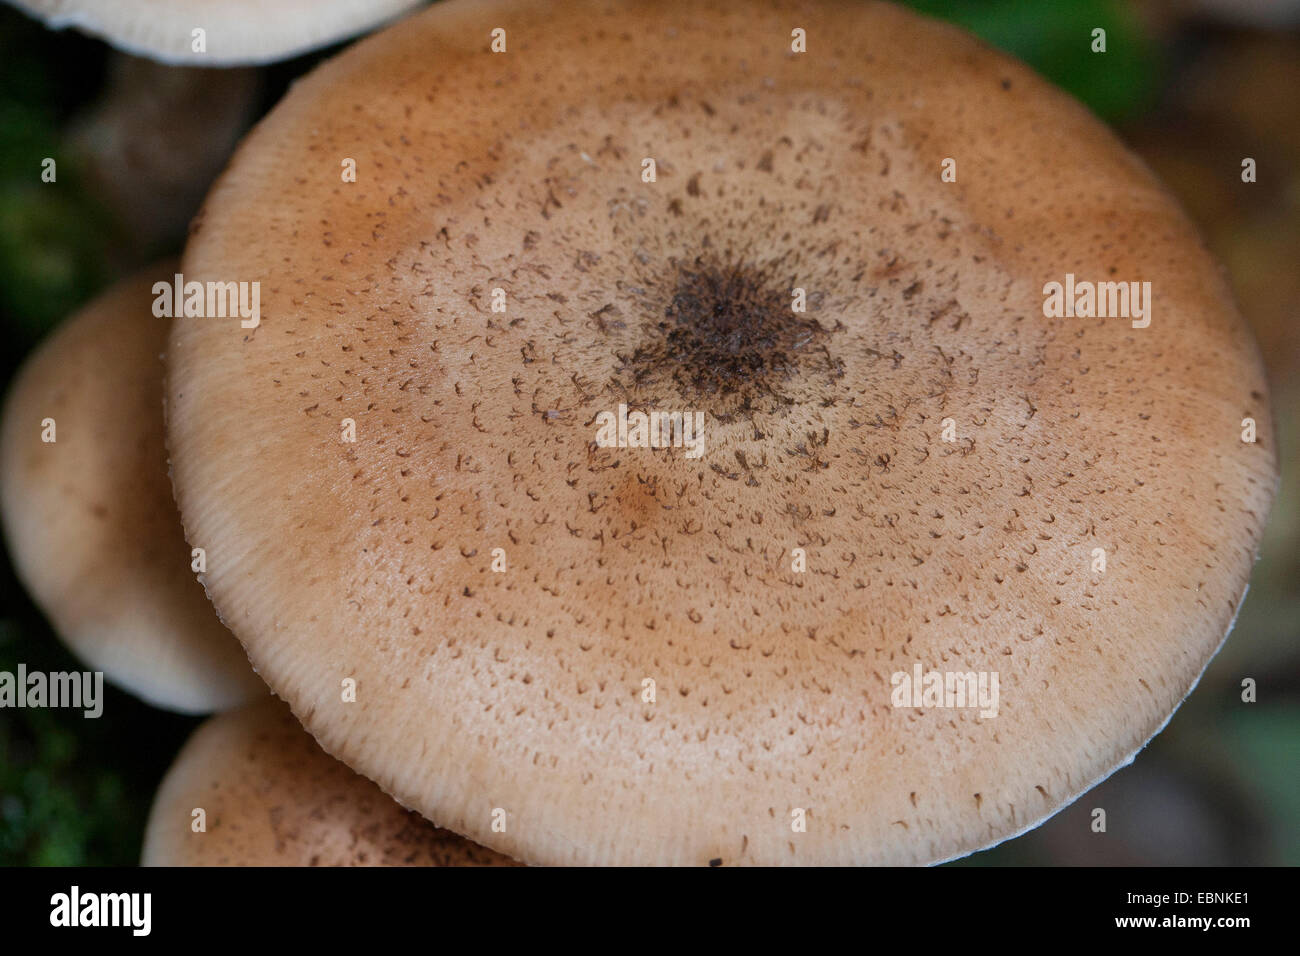 Miel oscura hongo, seta de miel (Armillaria ostoyae, Armillariella polymyces, Armillaria solidipes), vista desde arriba en la tapa, Alemania Foto de stock